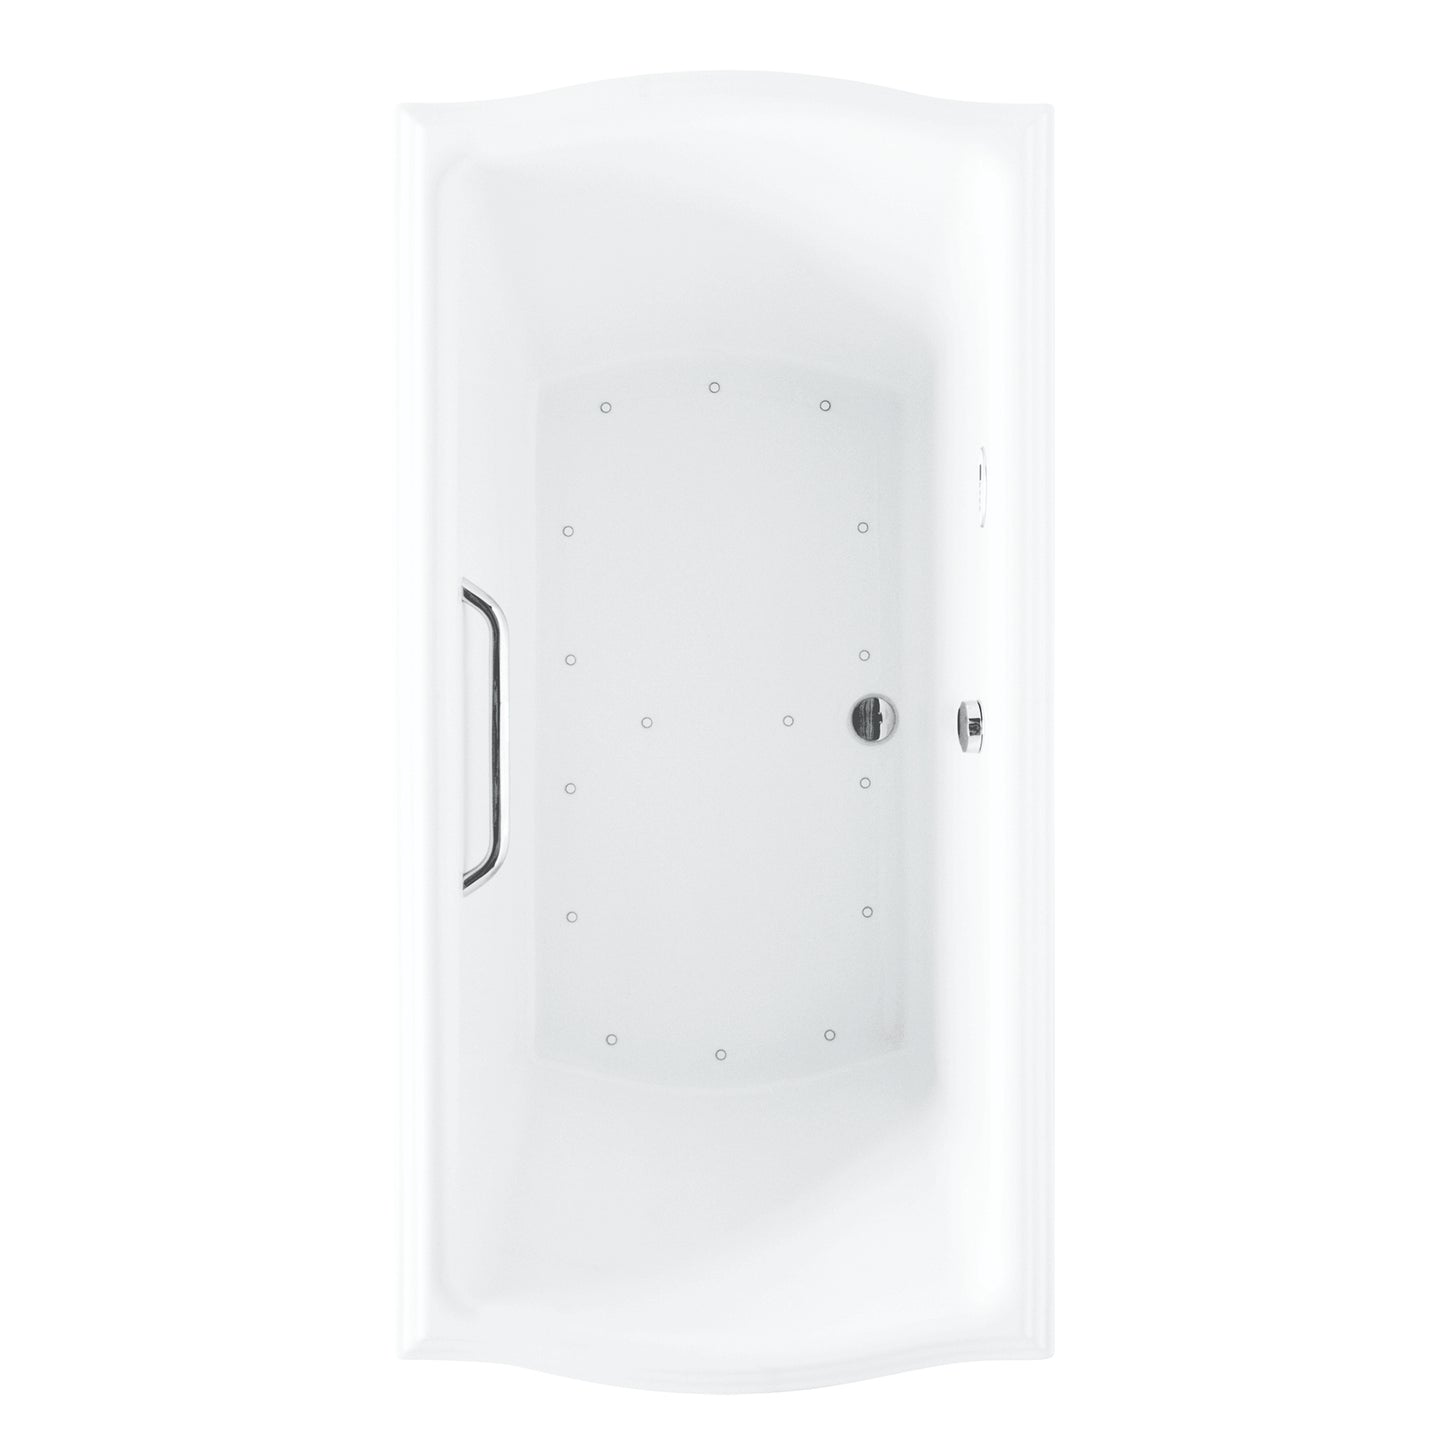 TOTO CLAYTON® Air Bath Acrylic Bathtub with Grab Bar 60" X 32" X 24-3/4" (L Blower) - ABR781T#01YCP